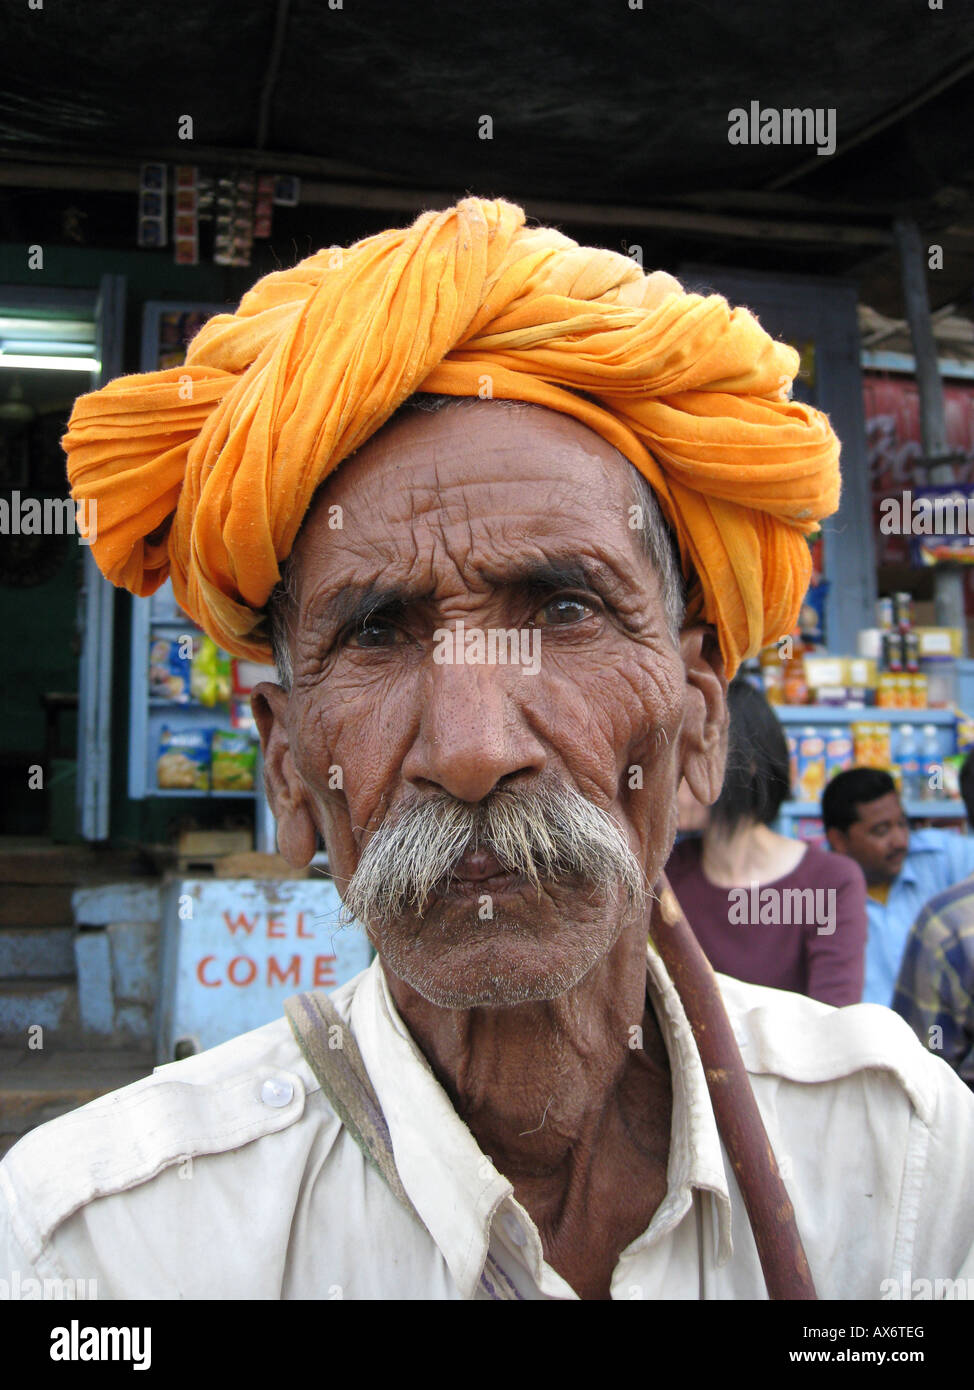 Man with orange turban Rajasthan India Stock Photo